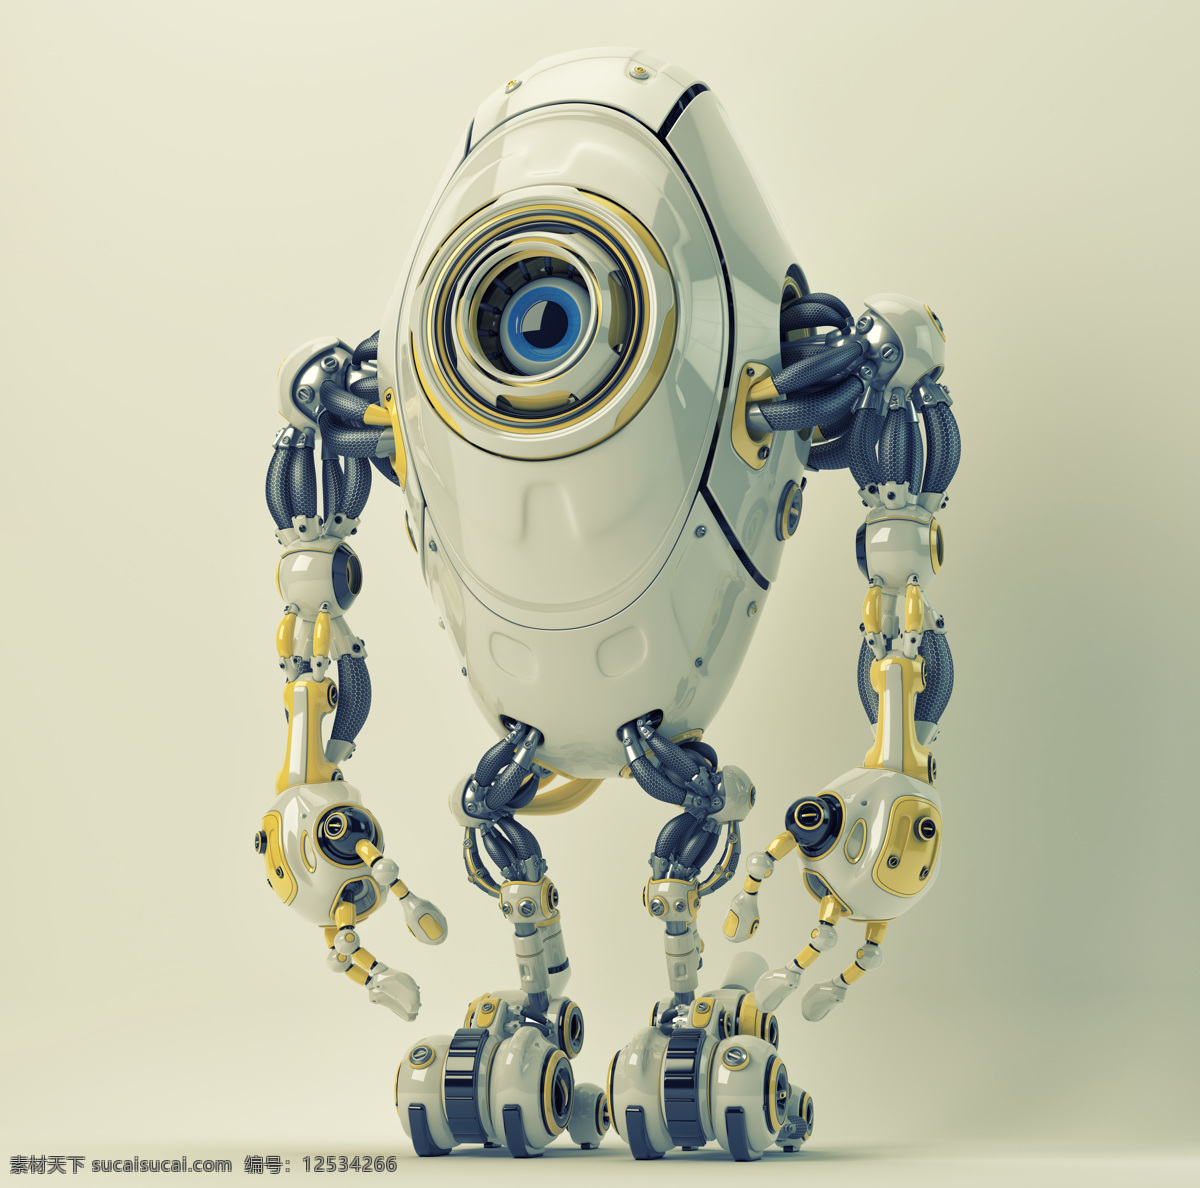 动漫动画 动漫人物 机器人 机器人设计 科幻 科幻世界 外星人 机械人 未来世界 科幻设计 小机器人 智能机器人 人工智能 psd源文件